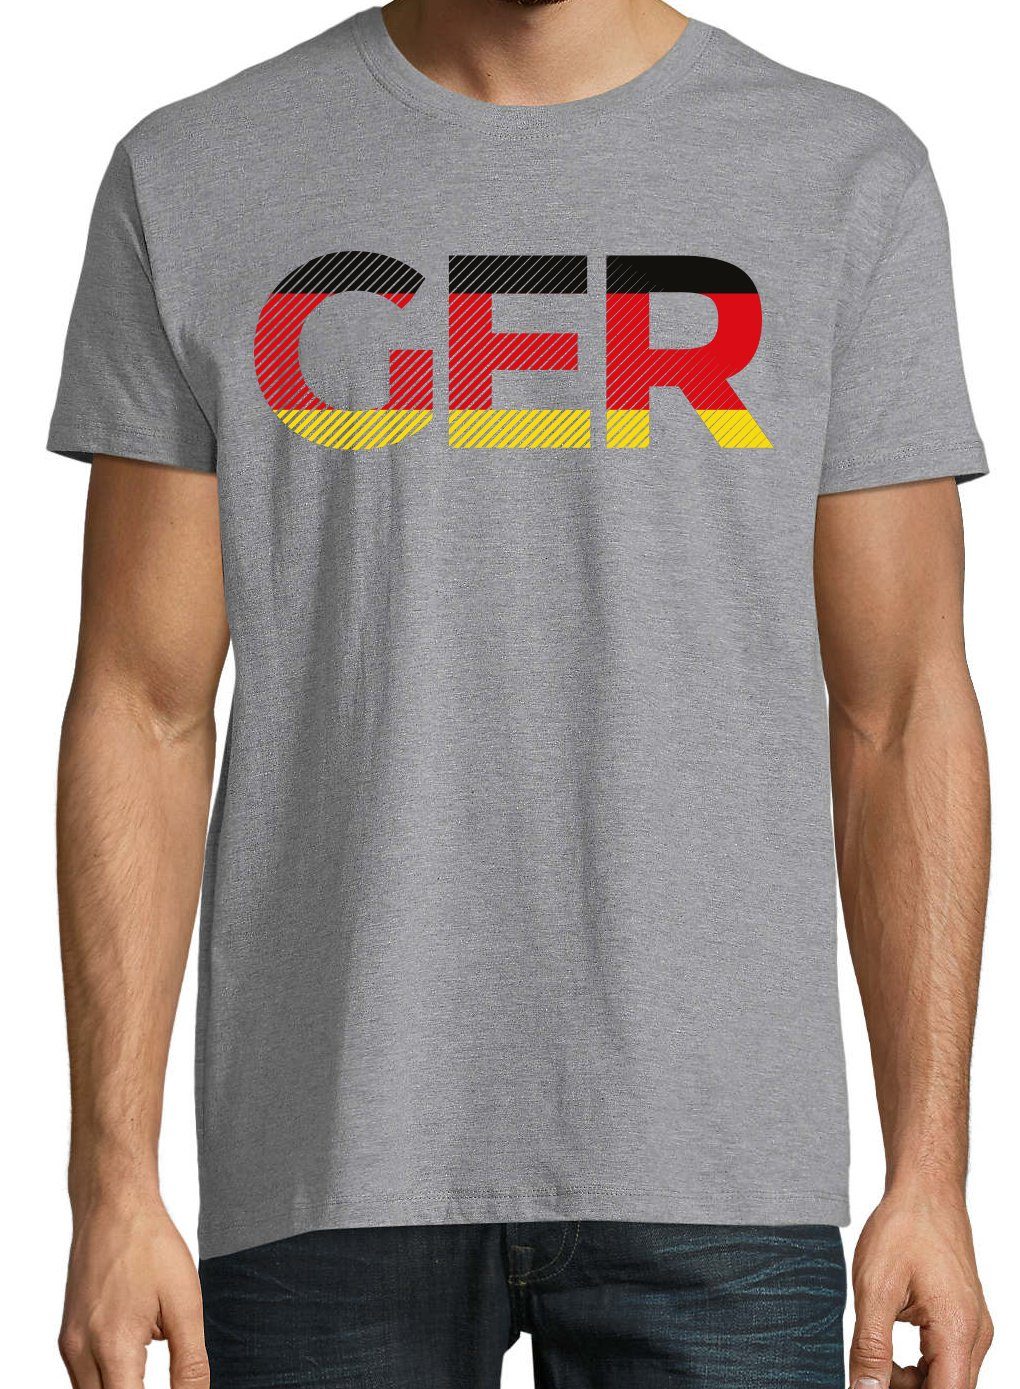 Youth Grau im Herren Look GER Germany mit Frontprint Fußball T-Shirt Designz T-Shirt